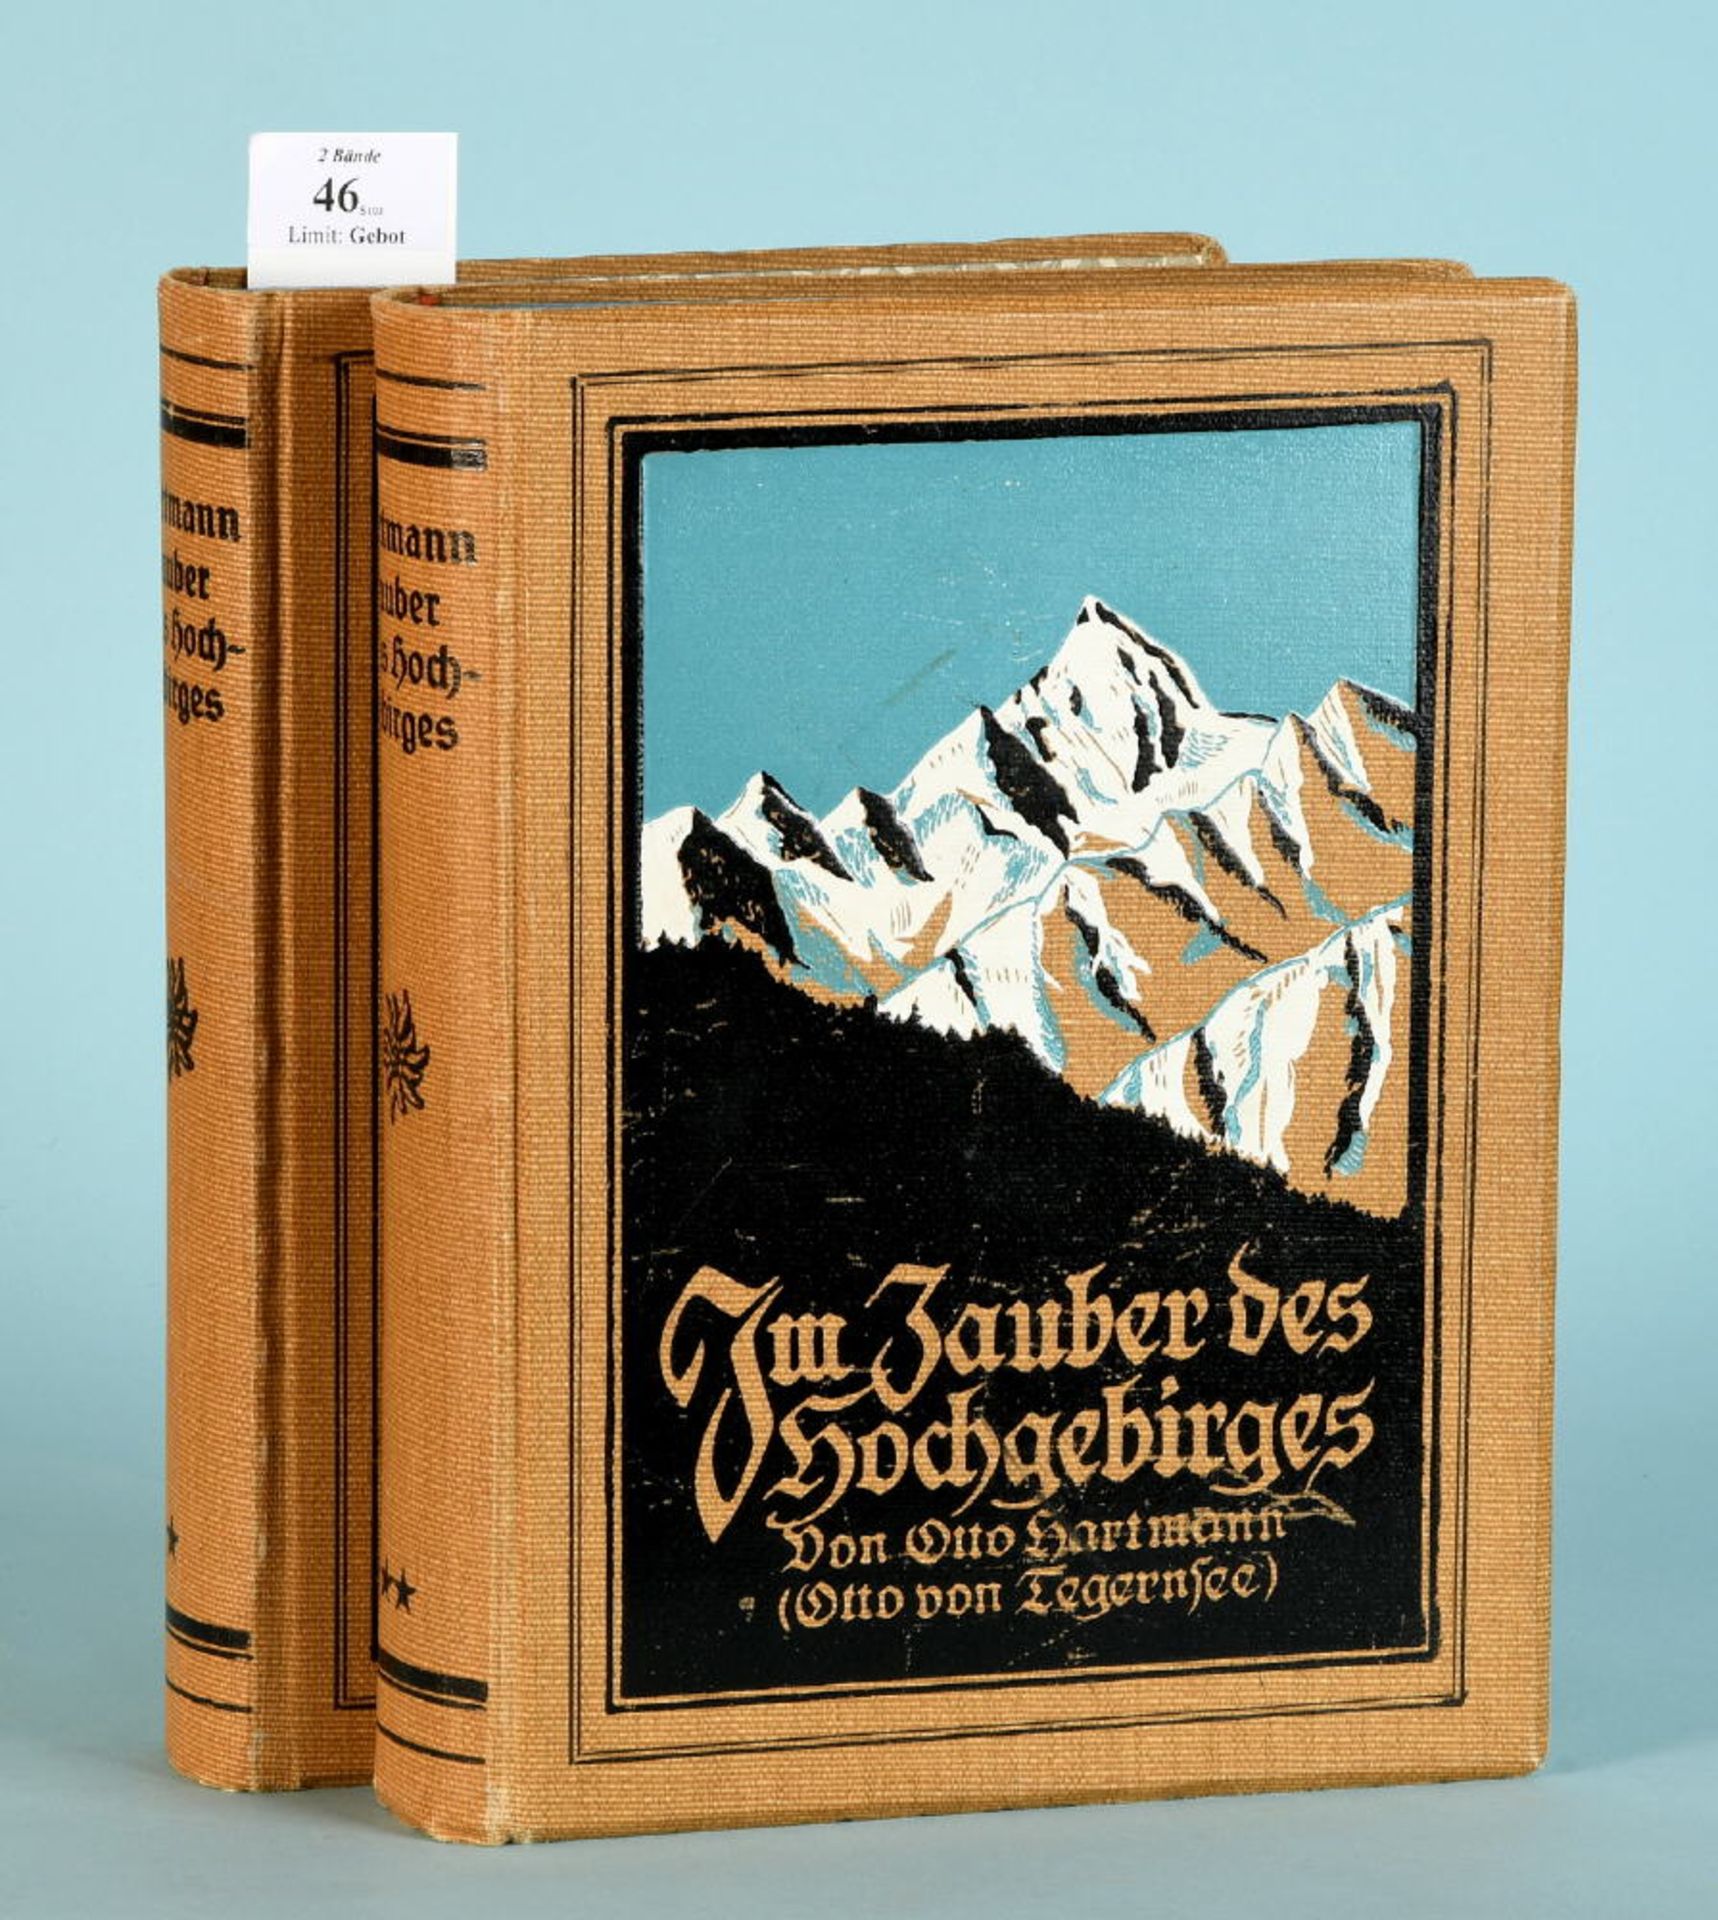 Hartmann, Otto "Im Zauber des Hochgebirges", 2 Bände710/735 teilw. farb. Abb., 795/812 S., Vlg. G.